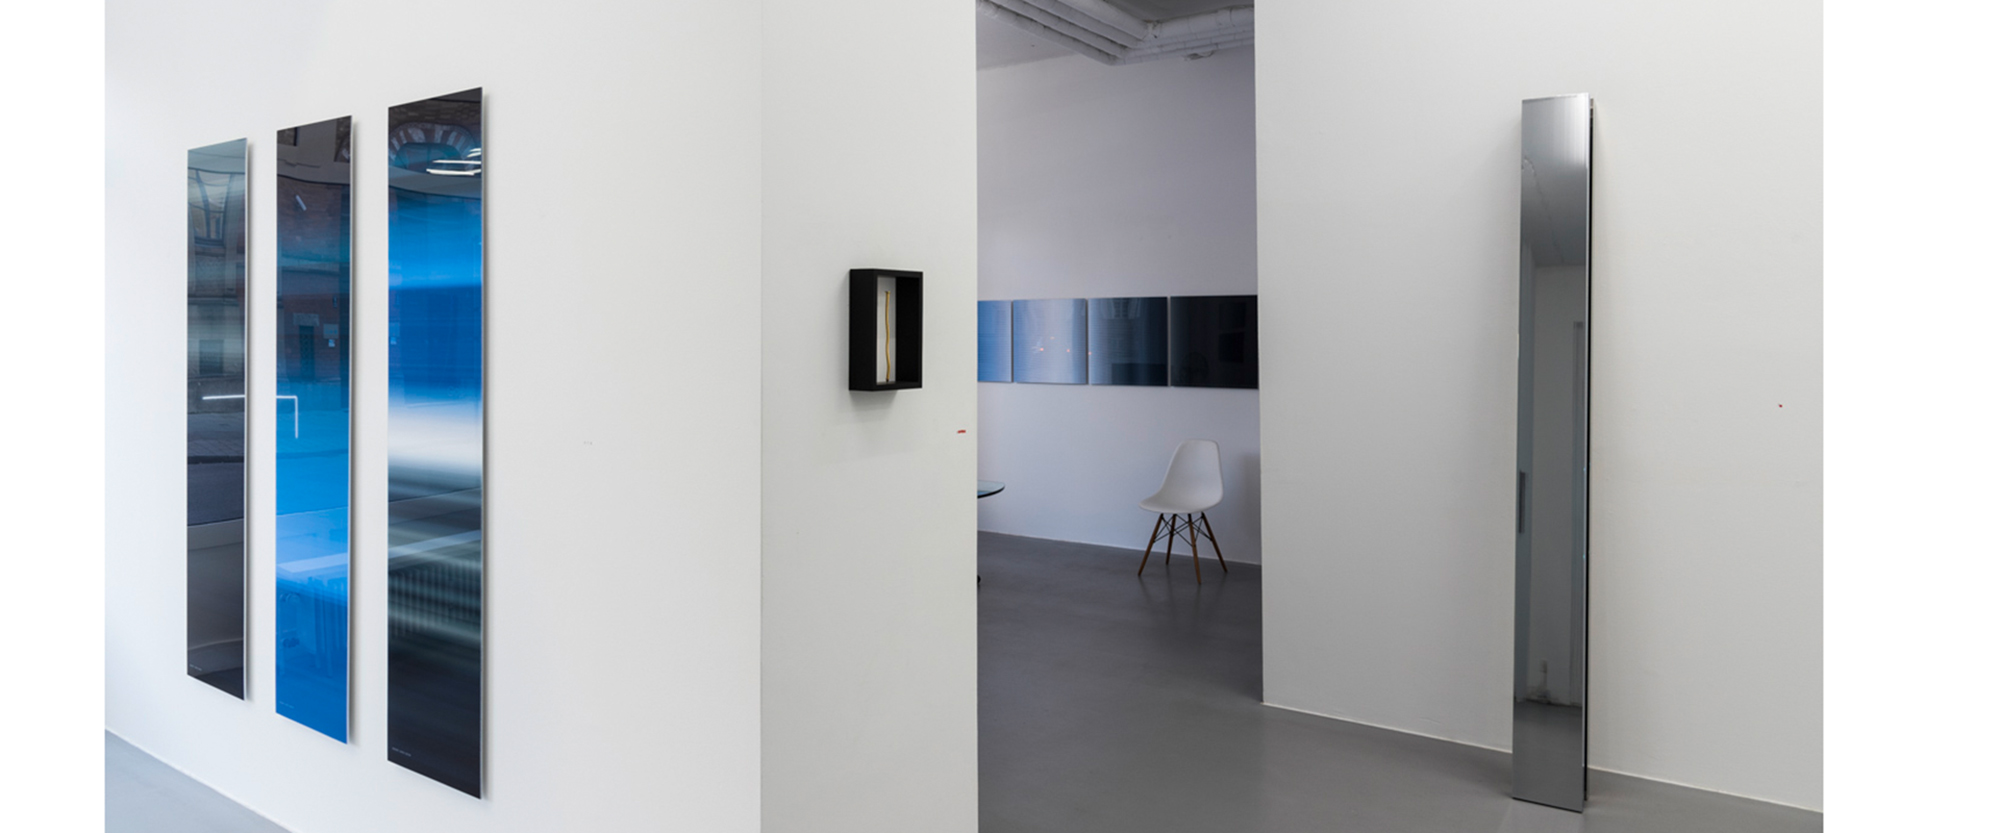 Ausstellungsansicht "Between Dark and Light. Inge Dick & Jan van Munster", Galerie Renate Bender 2018. Foto: M. Heyer